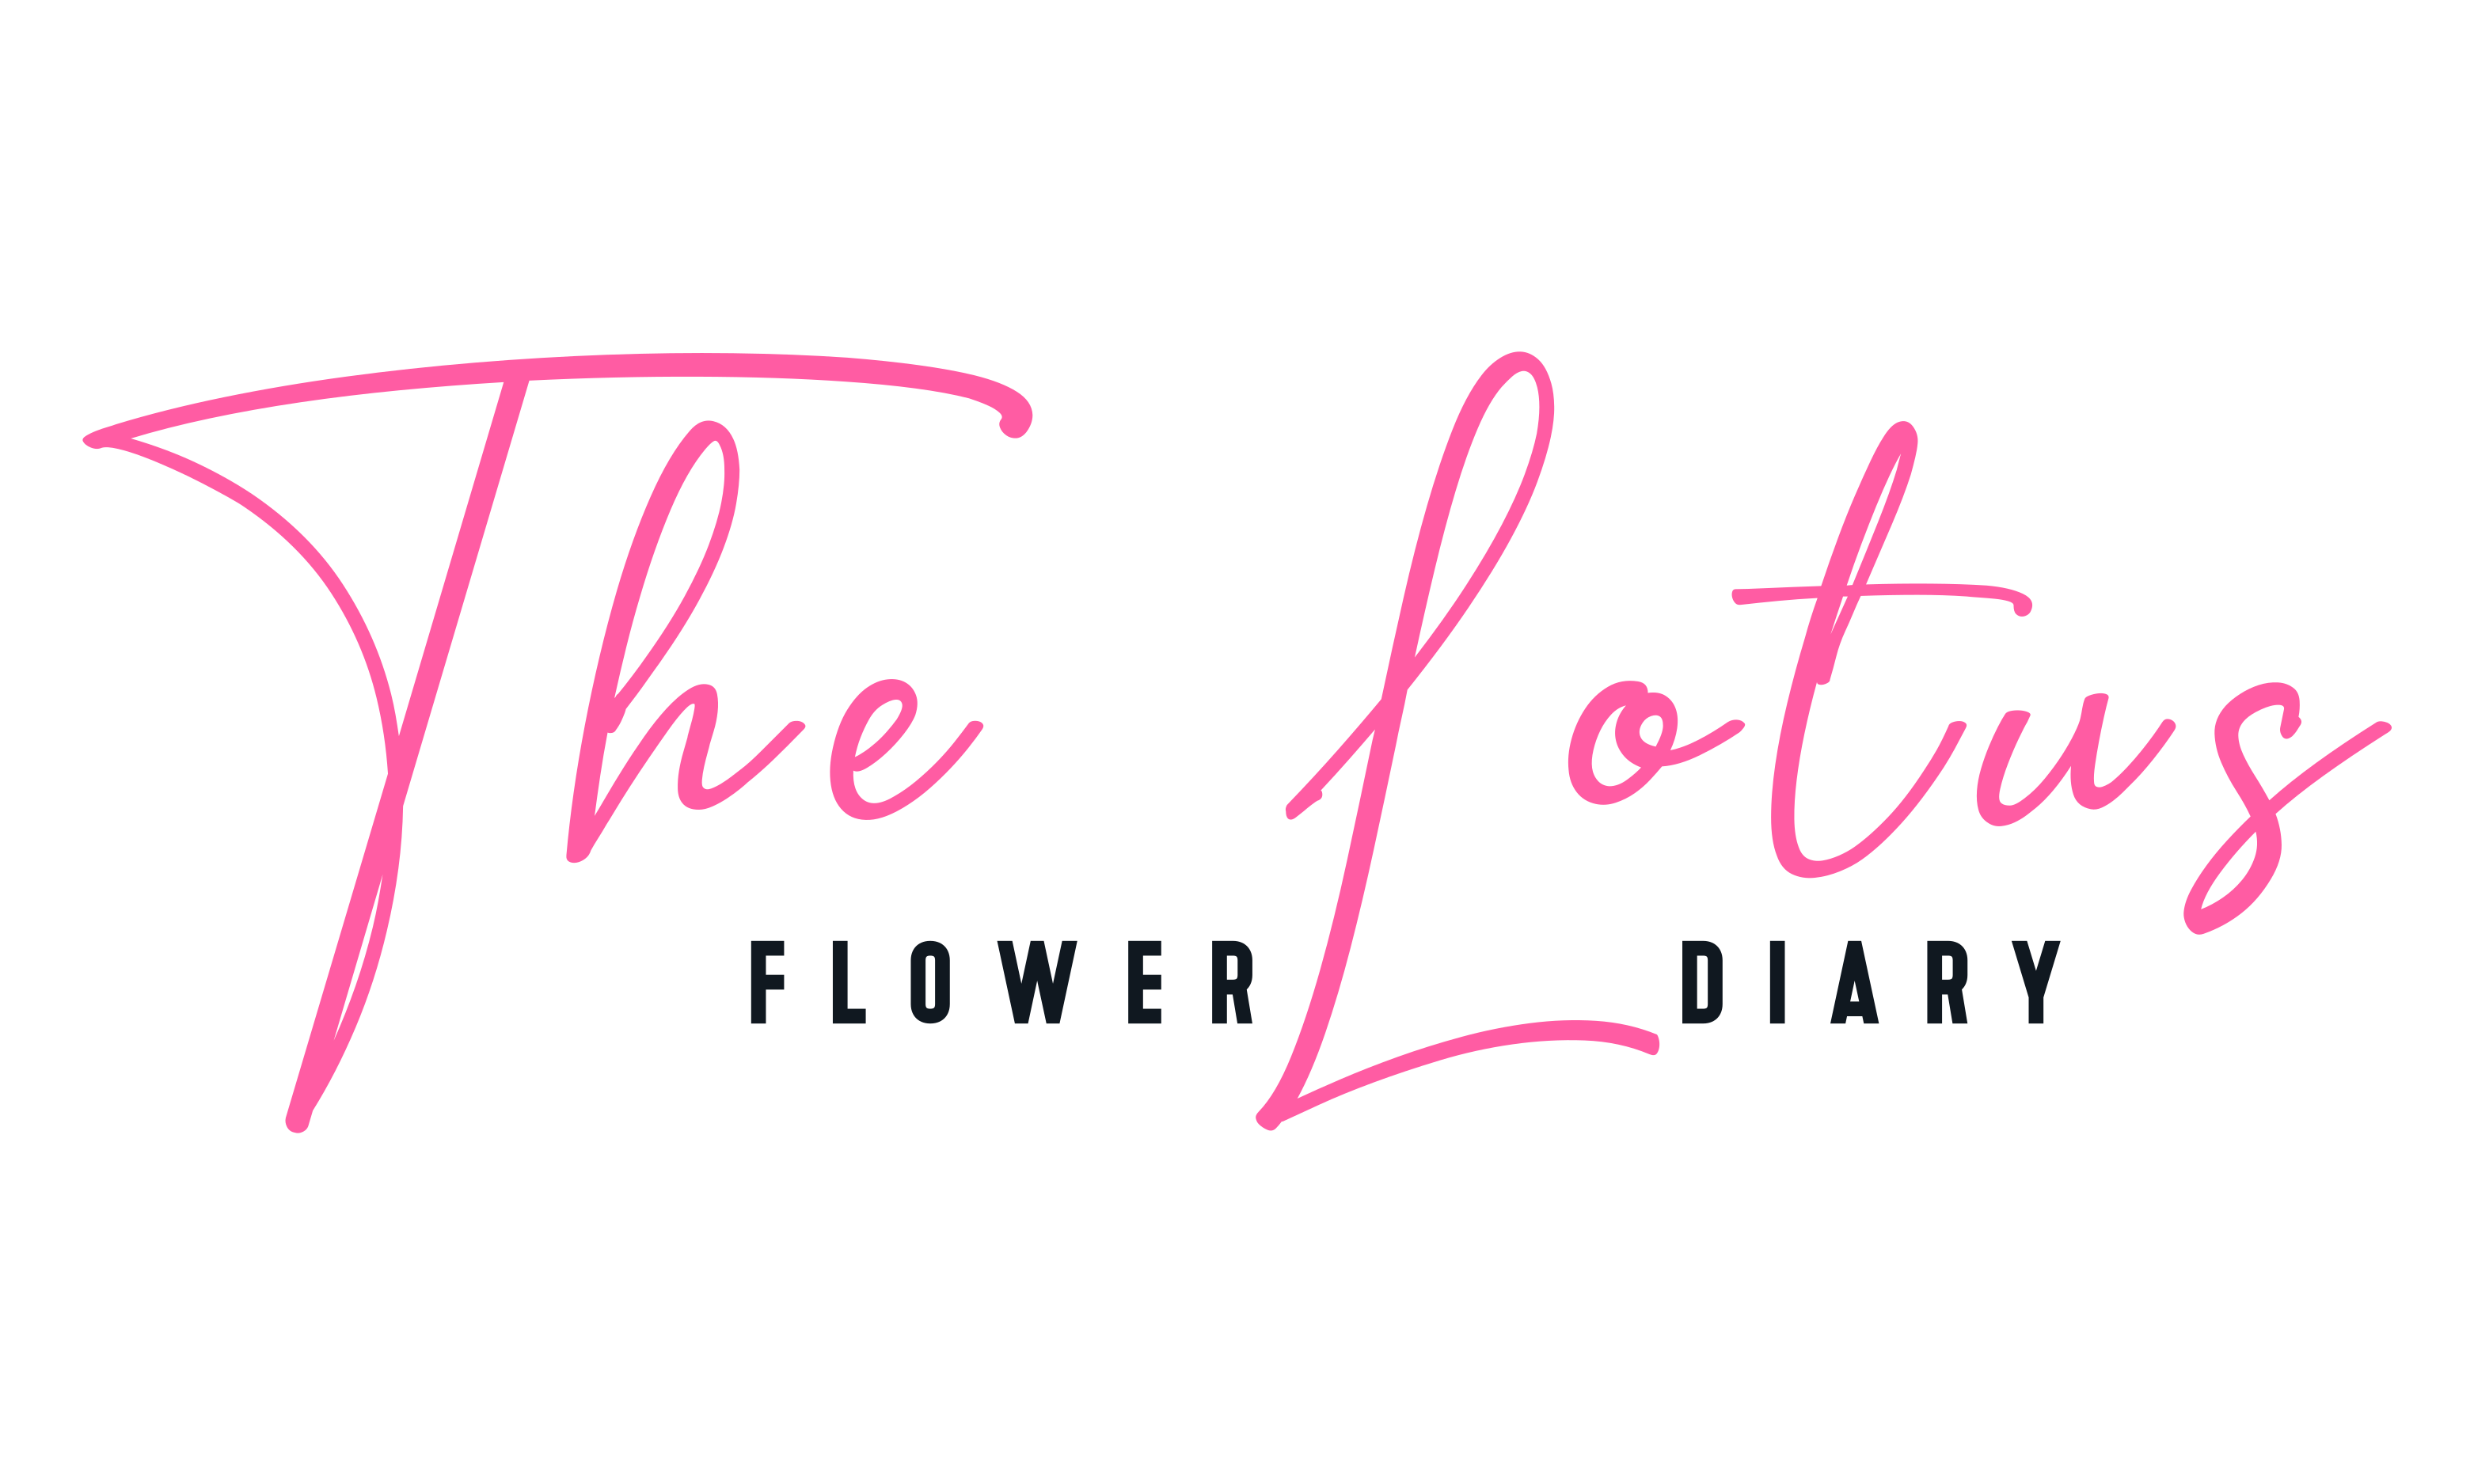 The Lotus Flower Diary